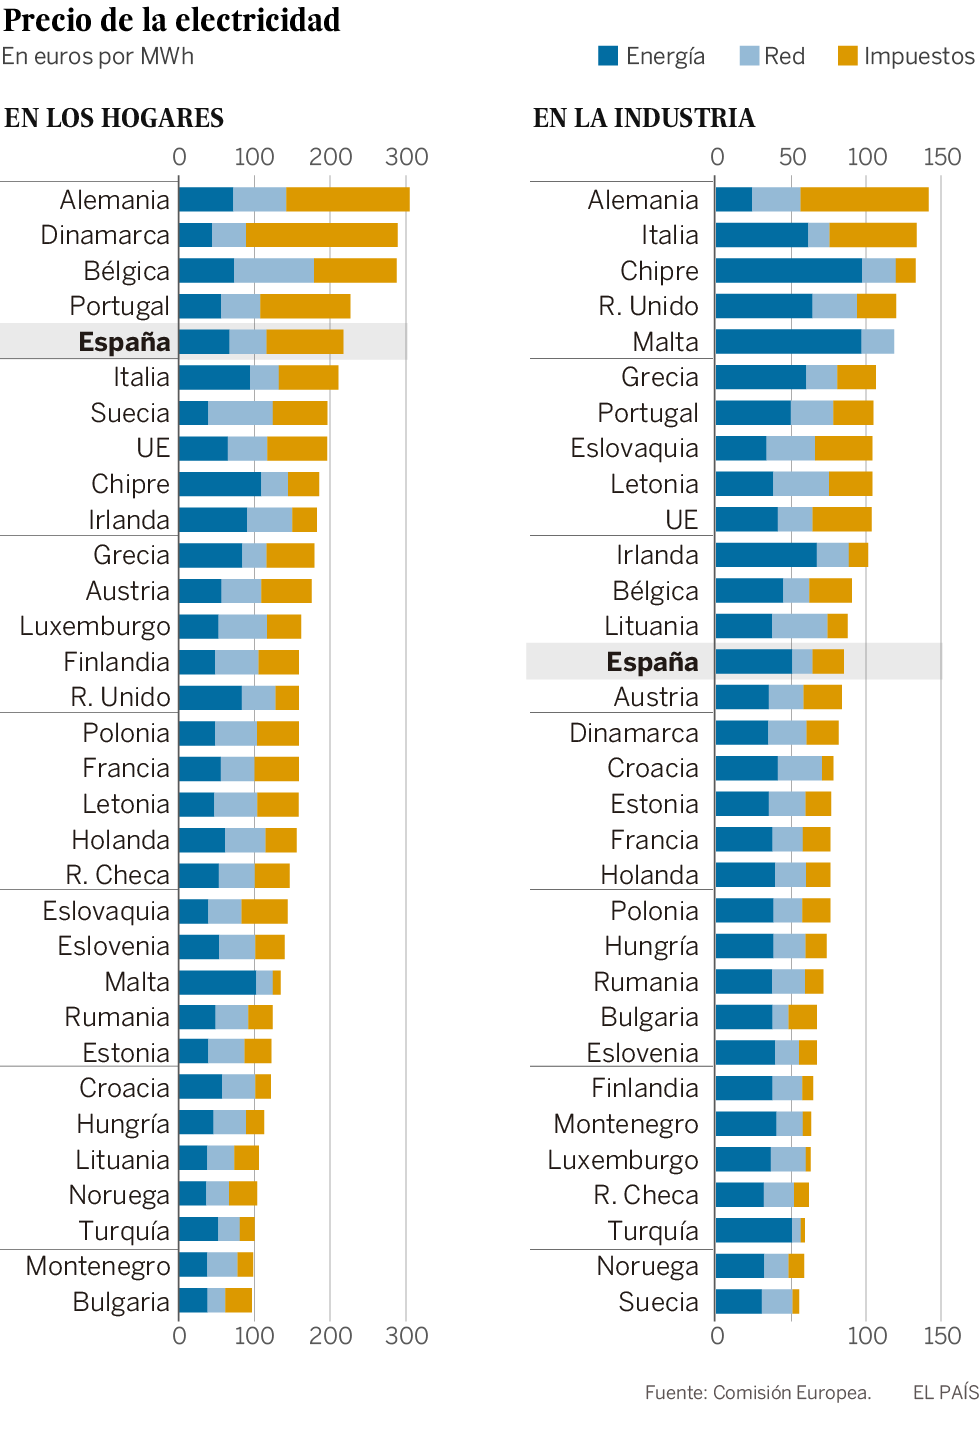 La electricidad en los hogares españoles es la quinta más cara de Europa